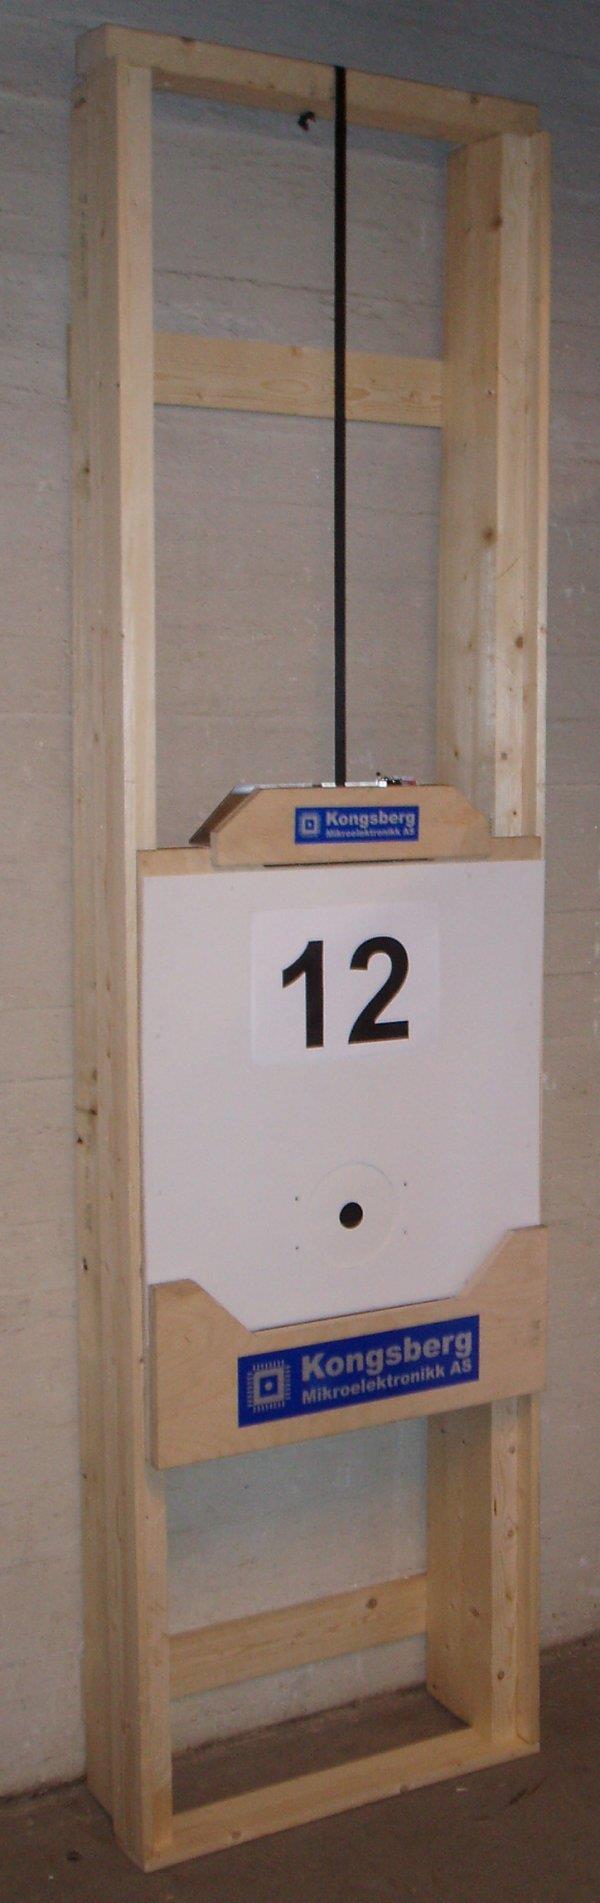 Følgende kan gjøres ved montering mot vegg: Alternativ 1: To planker 2 x8 settes opp mot veggen med drøyt 64cm utvendig avstand. Tykkelsen på plankene skal ikke overstige 48mm.